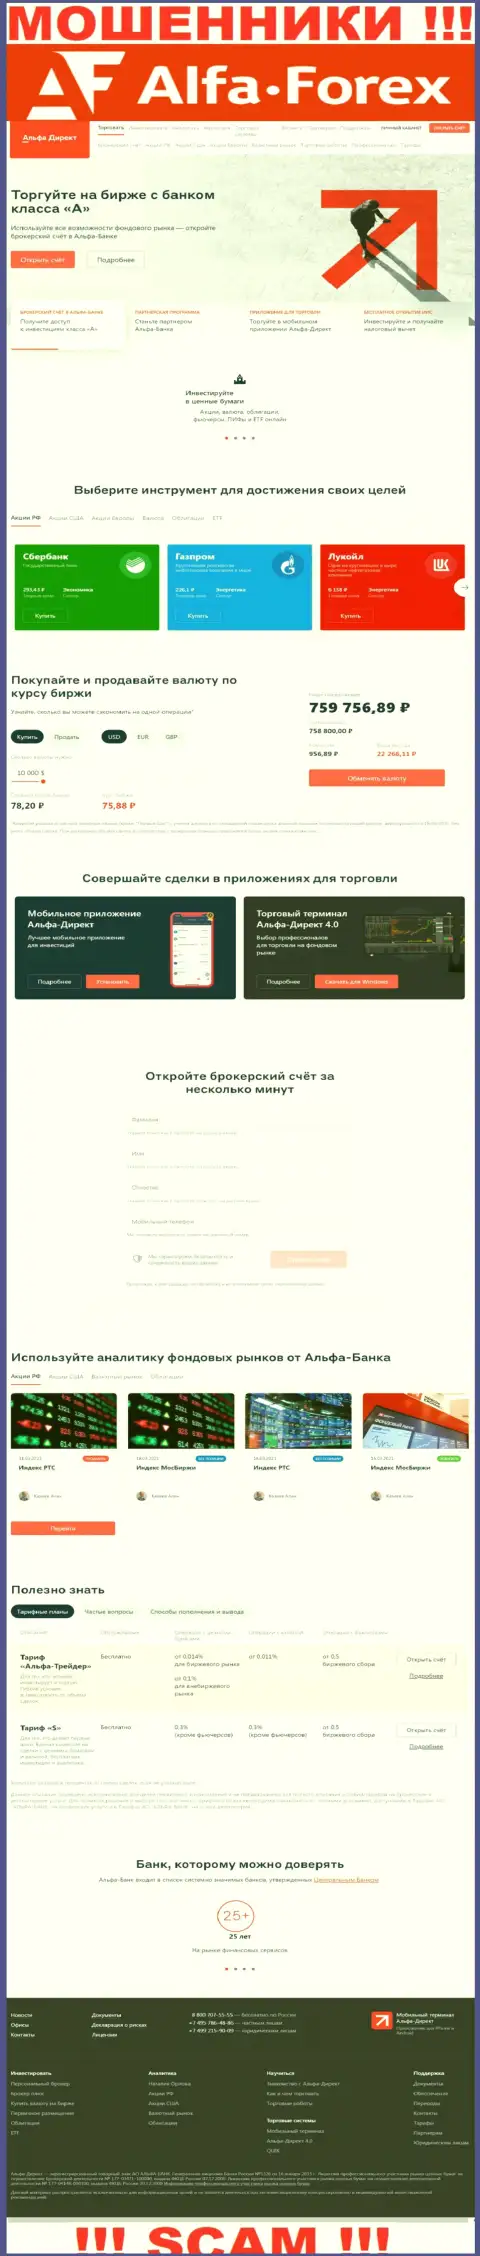 Alfadirect Ru - это официальный web-портал мошенников Альфадирект Ру